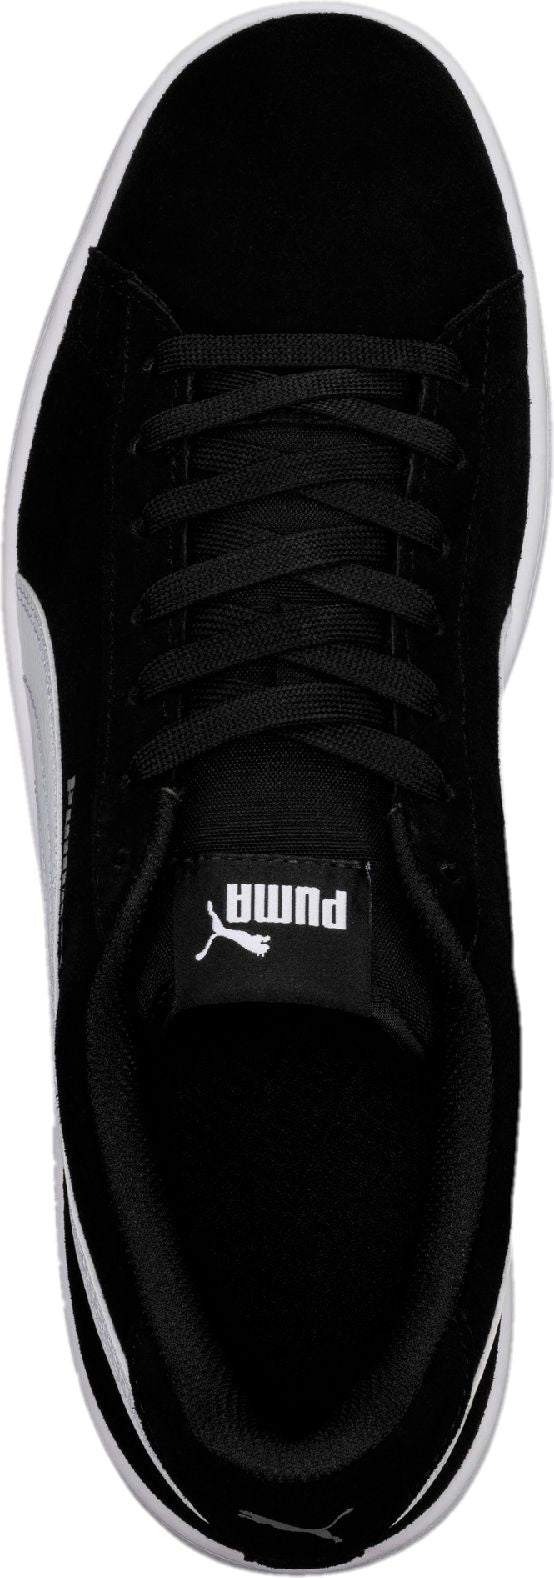 Puma Shoes Puma Smash V2 Black White